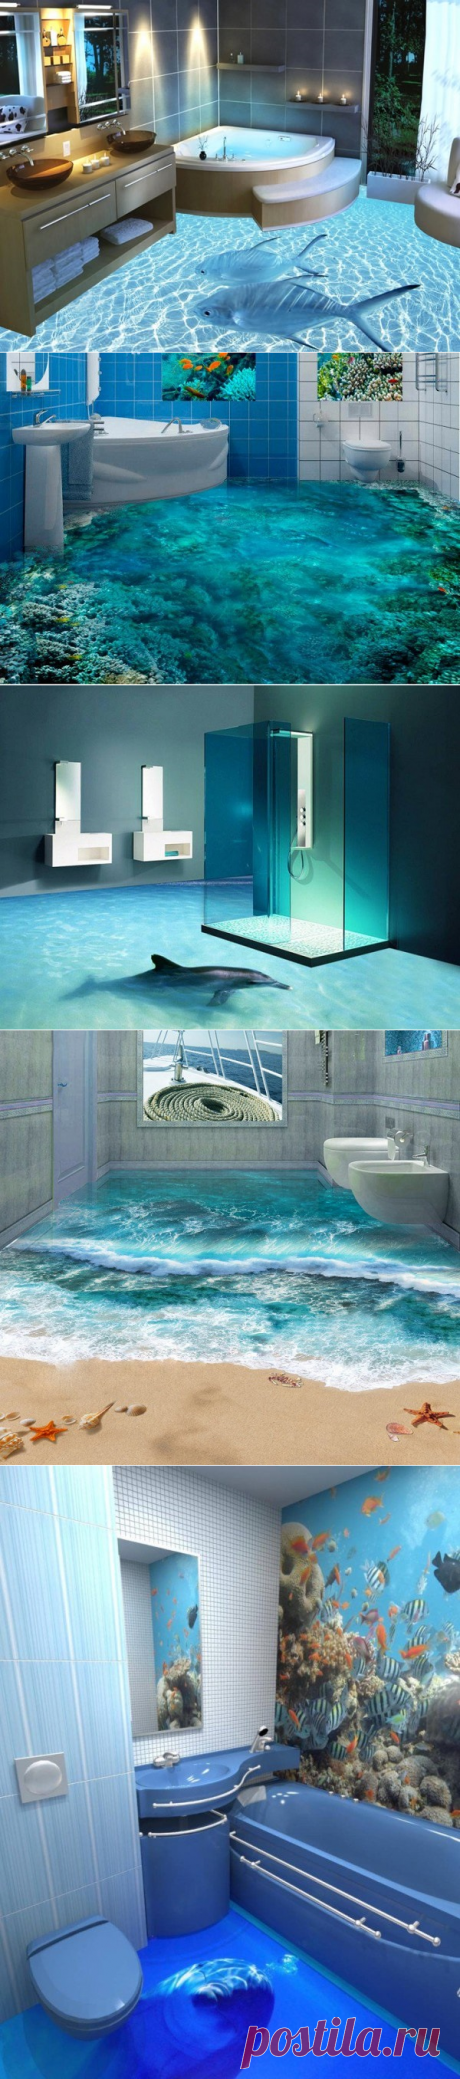 Поразительный 3D дизайн ванных комнат.